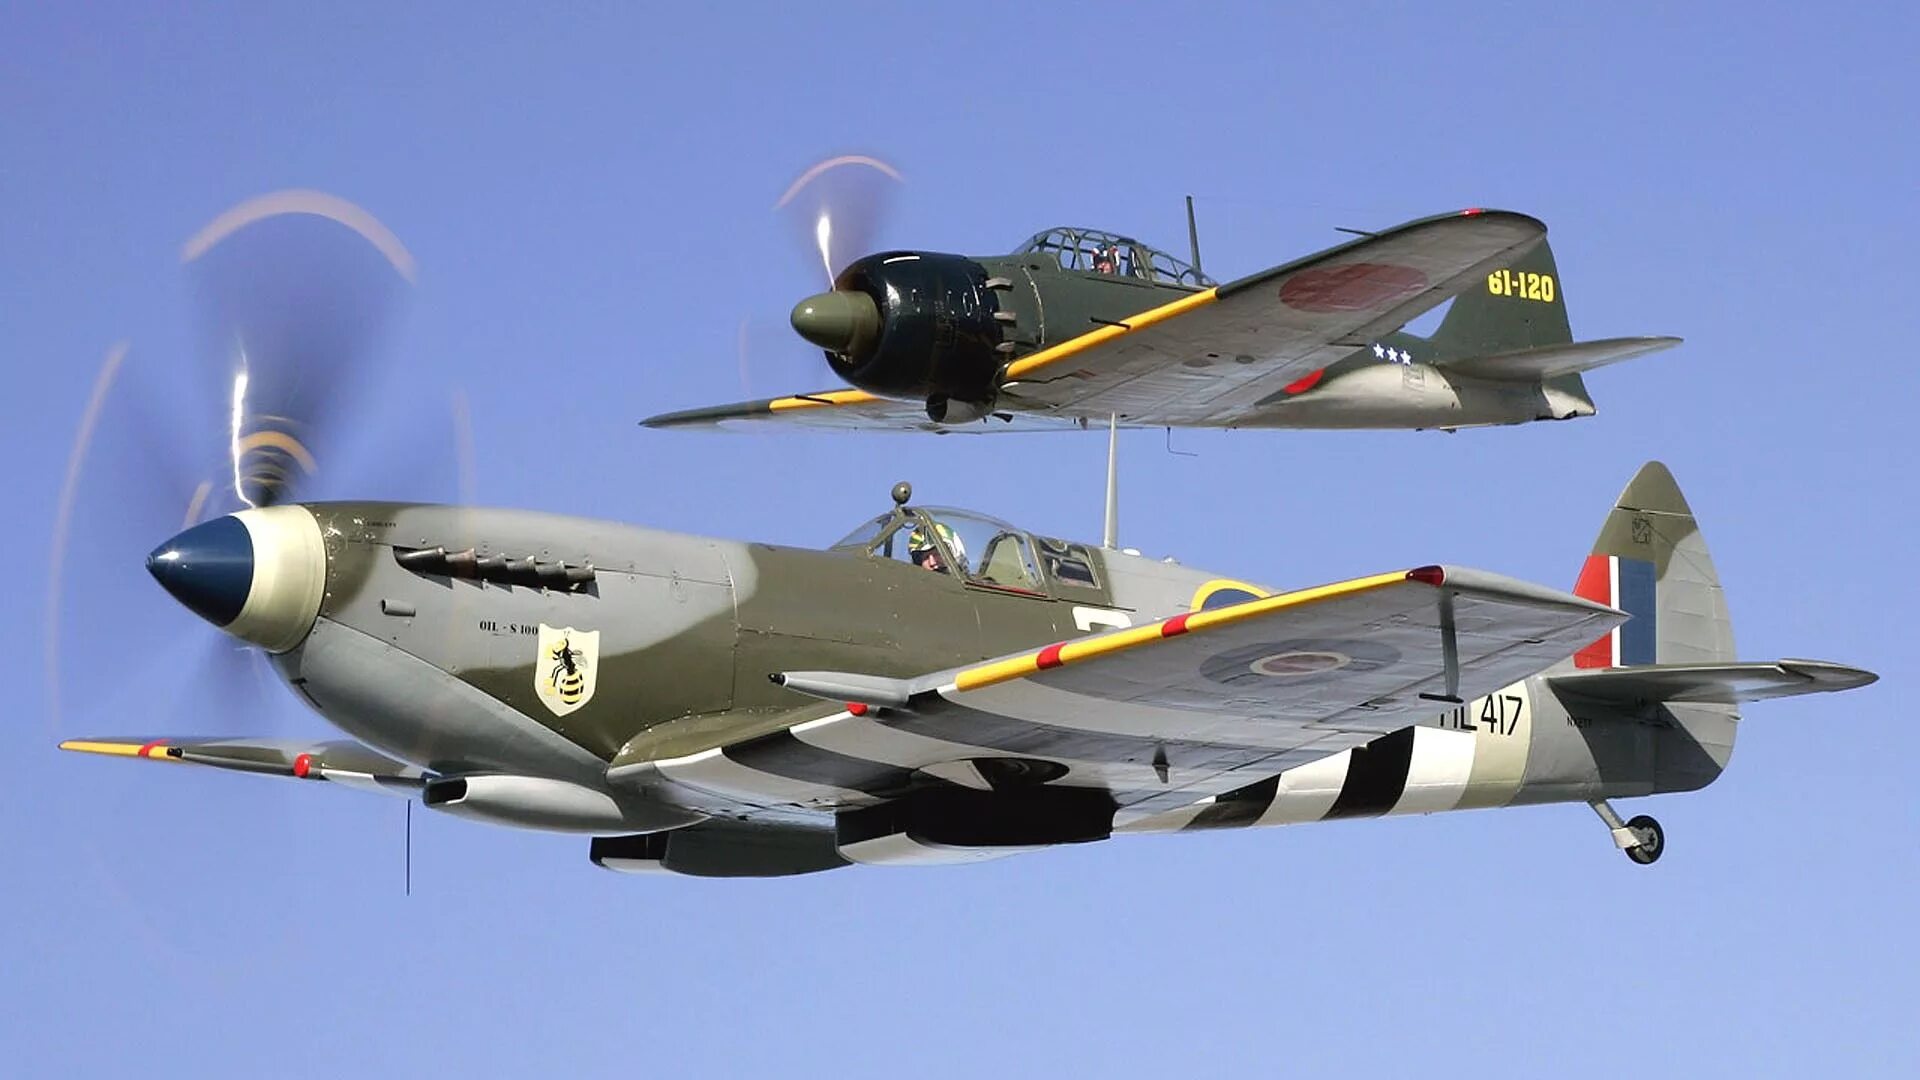 Самолёты истребители второй мировой войны. Supermarine Spitfire. Истребители 2 мировой войны. Авиация 2 мировой войны. Самолеты истребители второй мировой